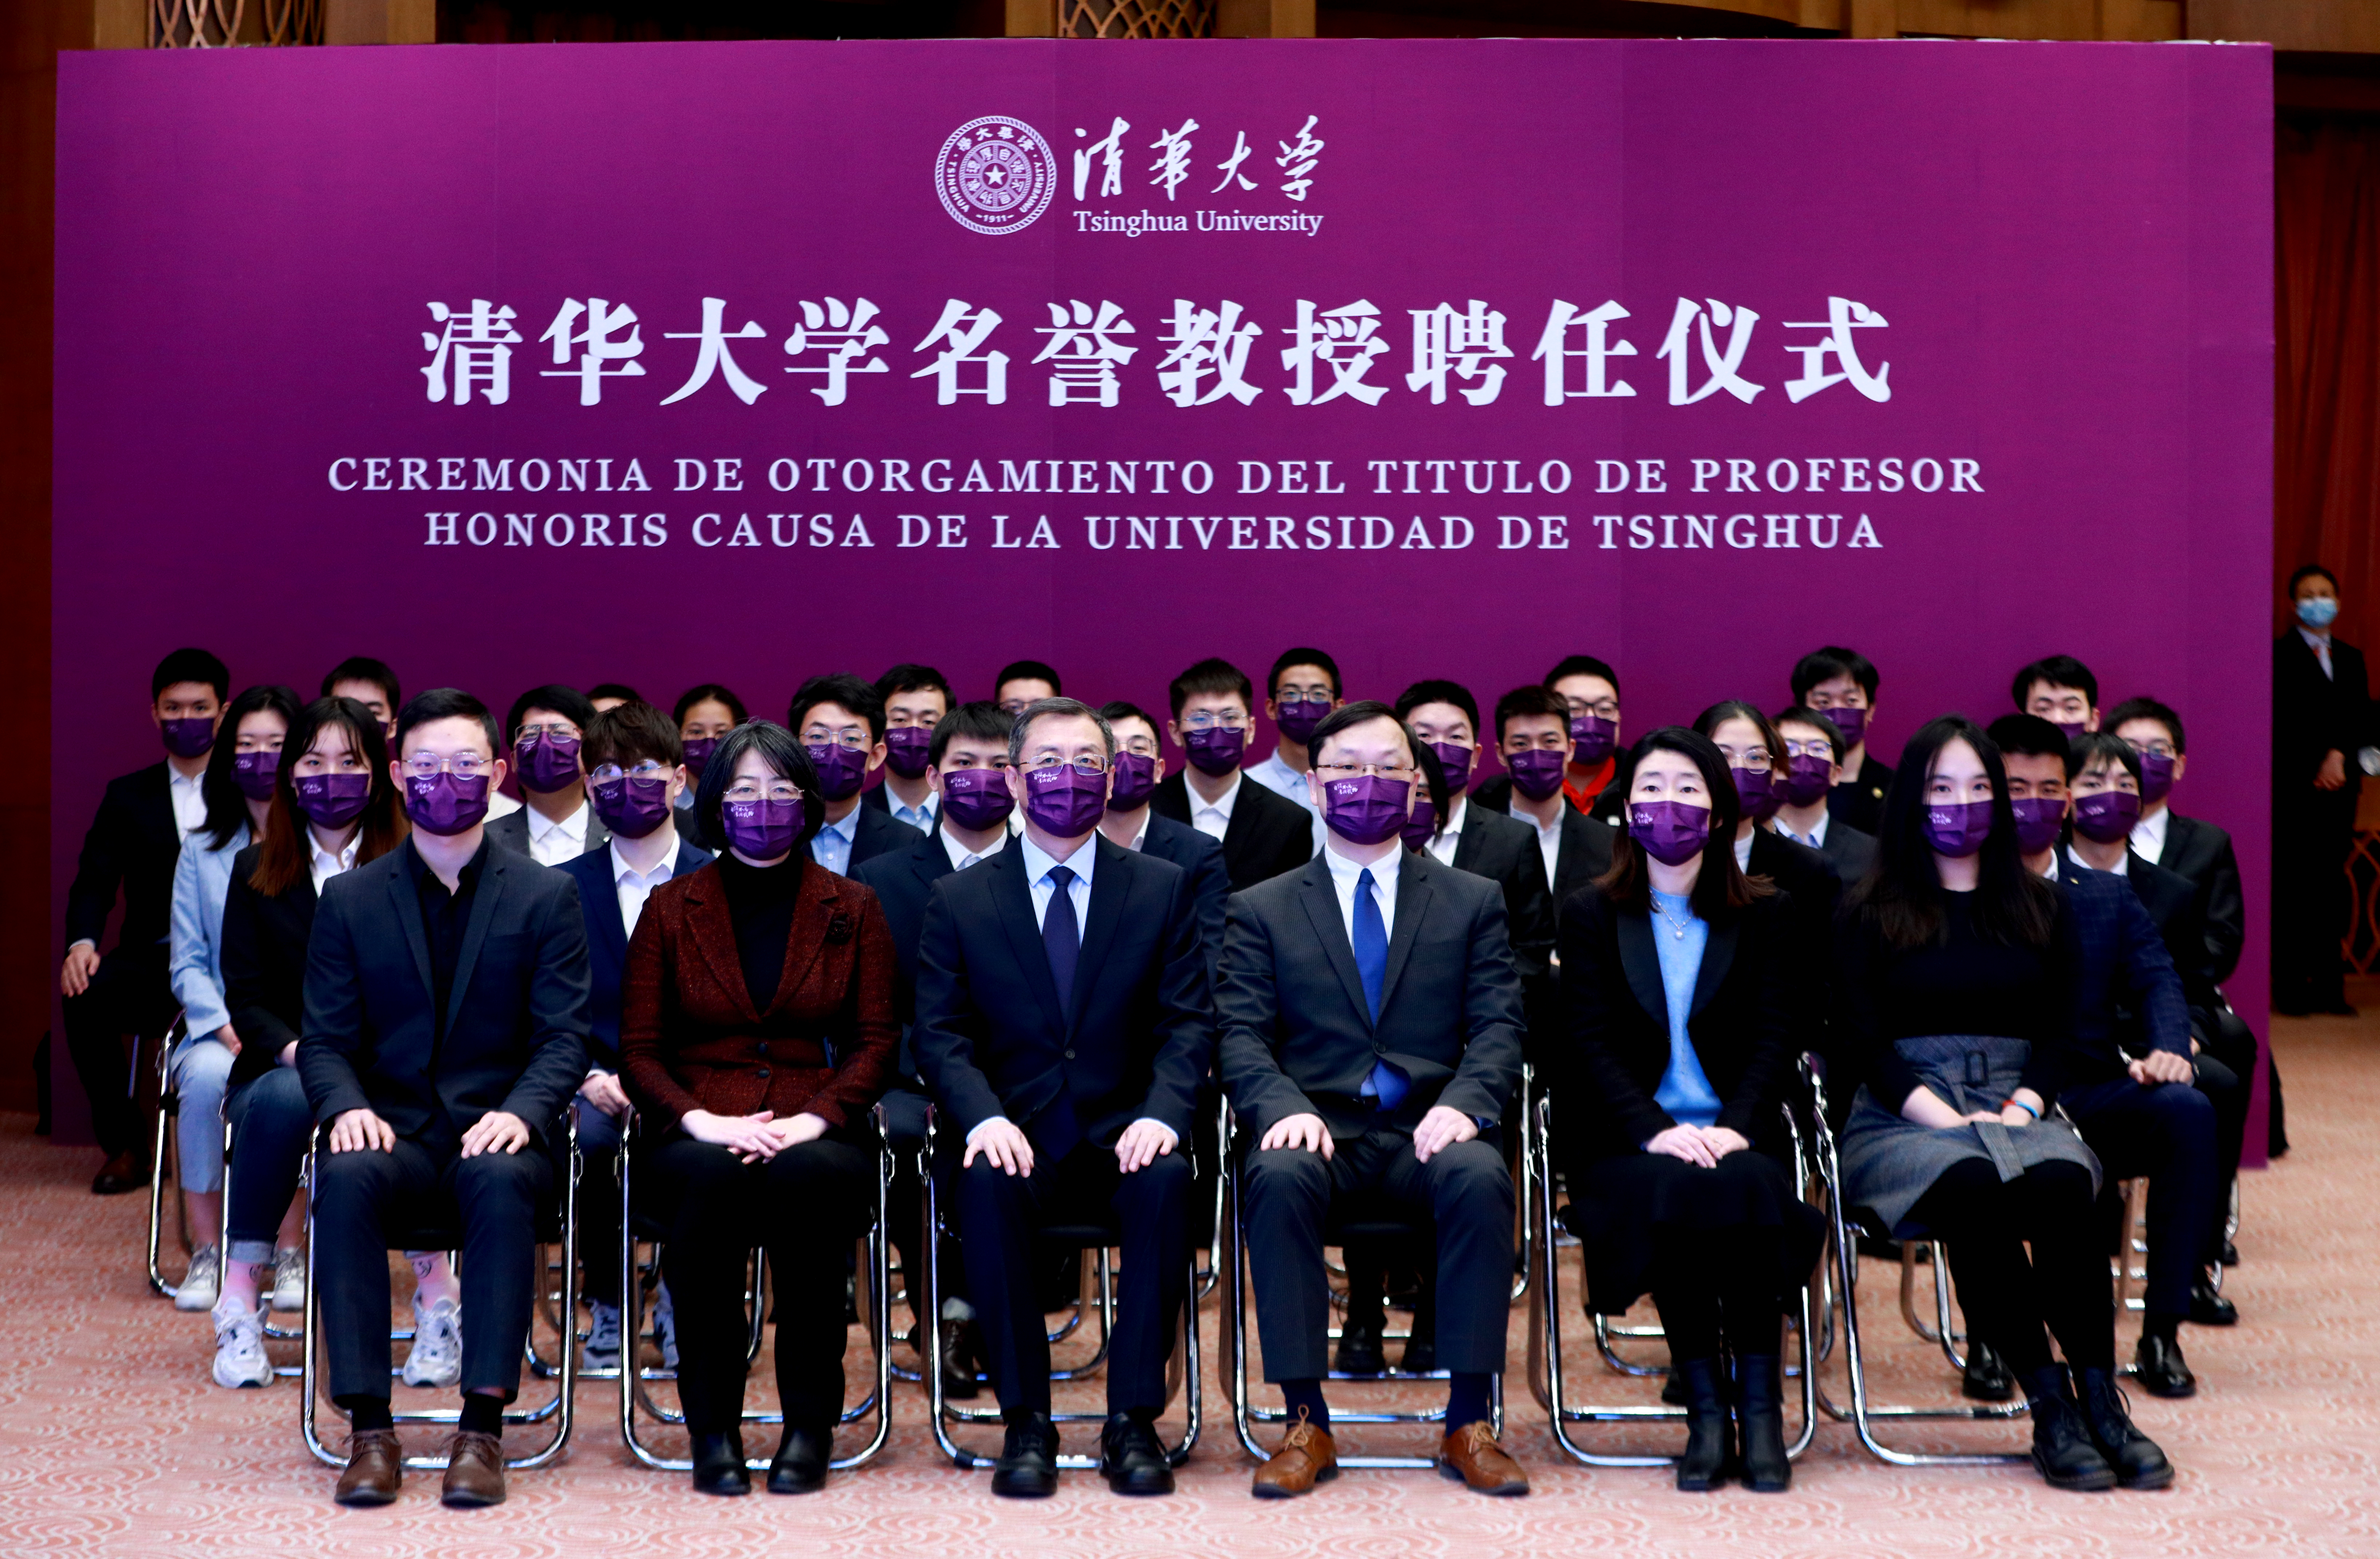 20220204-阿根廷总统阿尔韦托·费尔南德斯清华大学名誉教授聘任仪式-常志东-清华师生代表出席仪式JPGJPG